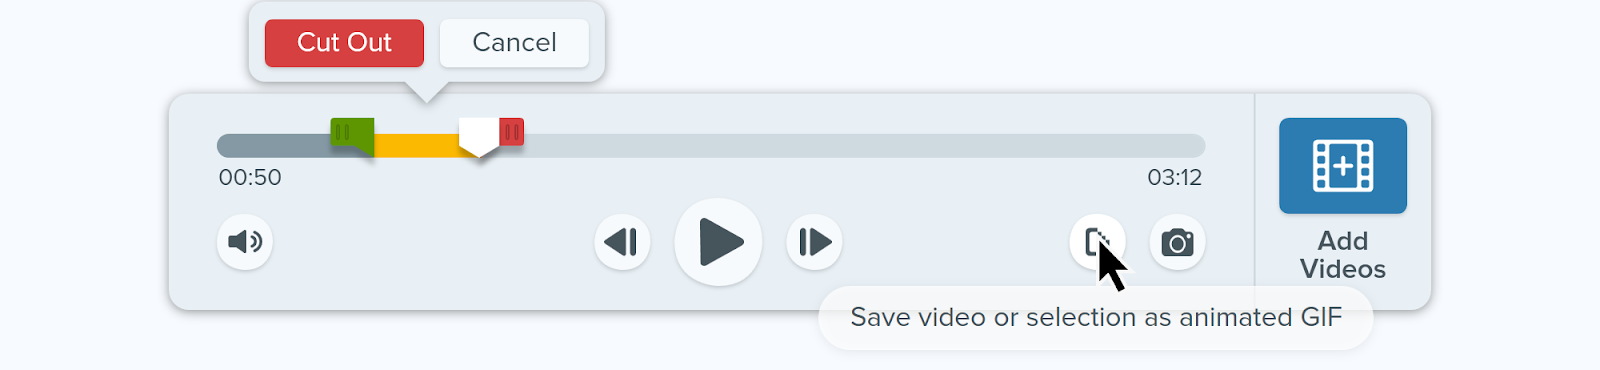 İmlecin "Videoyu veya seçimi animasyonlu GIF olarak kaydet" düğmesinin üzerinde durduğu Snagit'in kullanımı kolay kullanıcı arayüzünün görüntüsü.